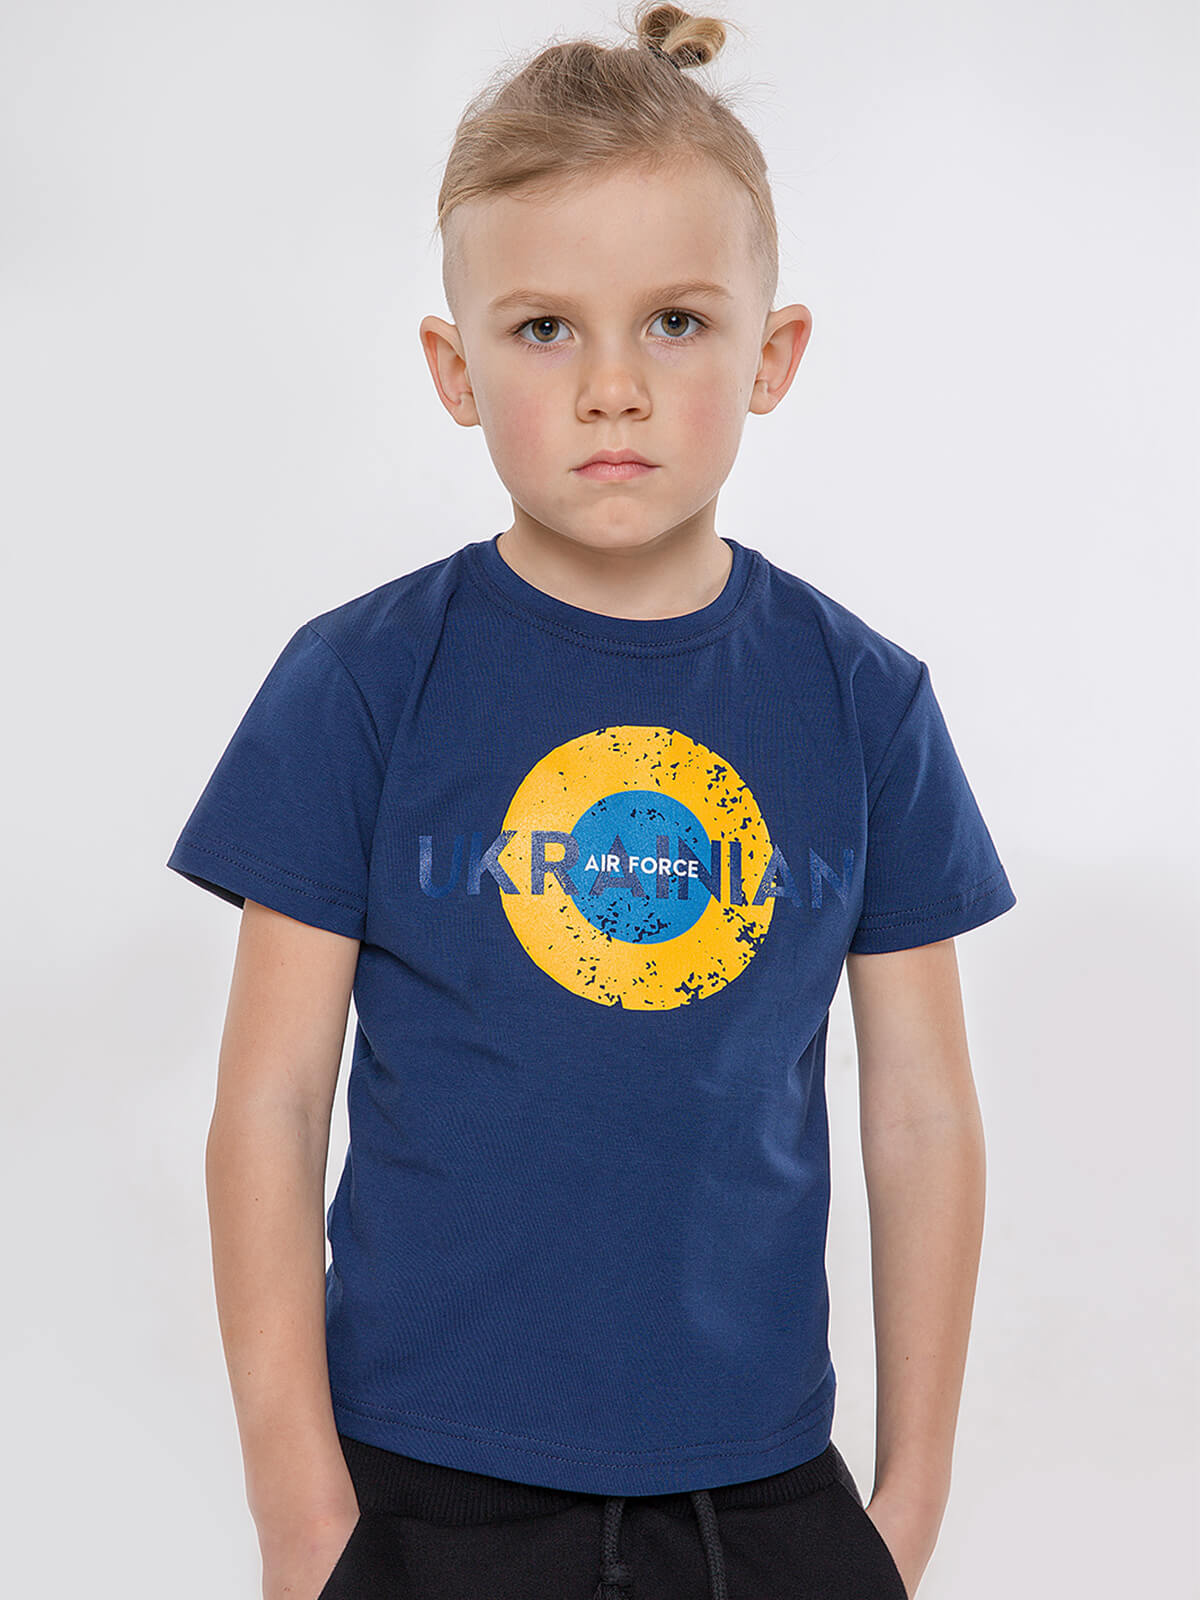 Kids T-Shirt Ukrainian Air Force. Color navy blue. 2.